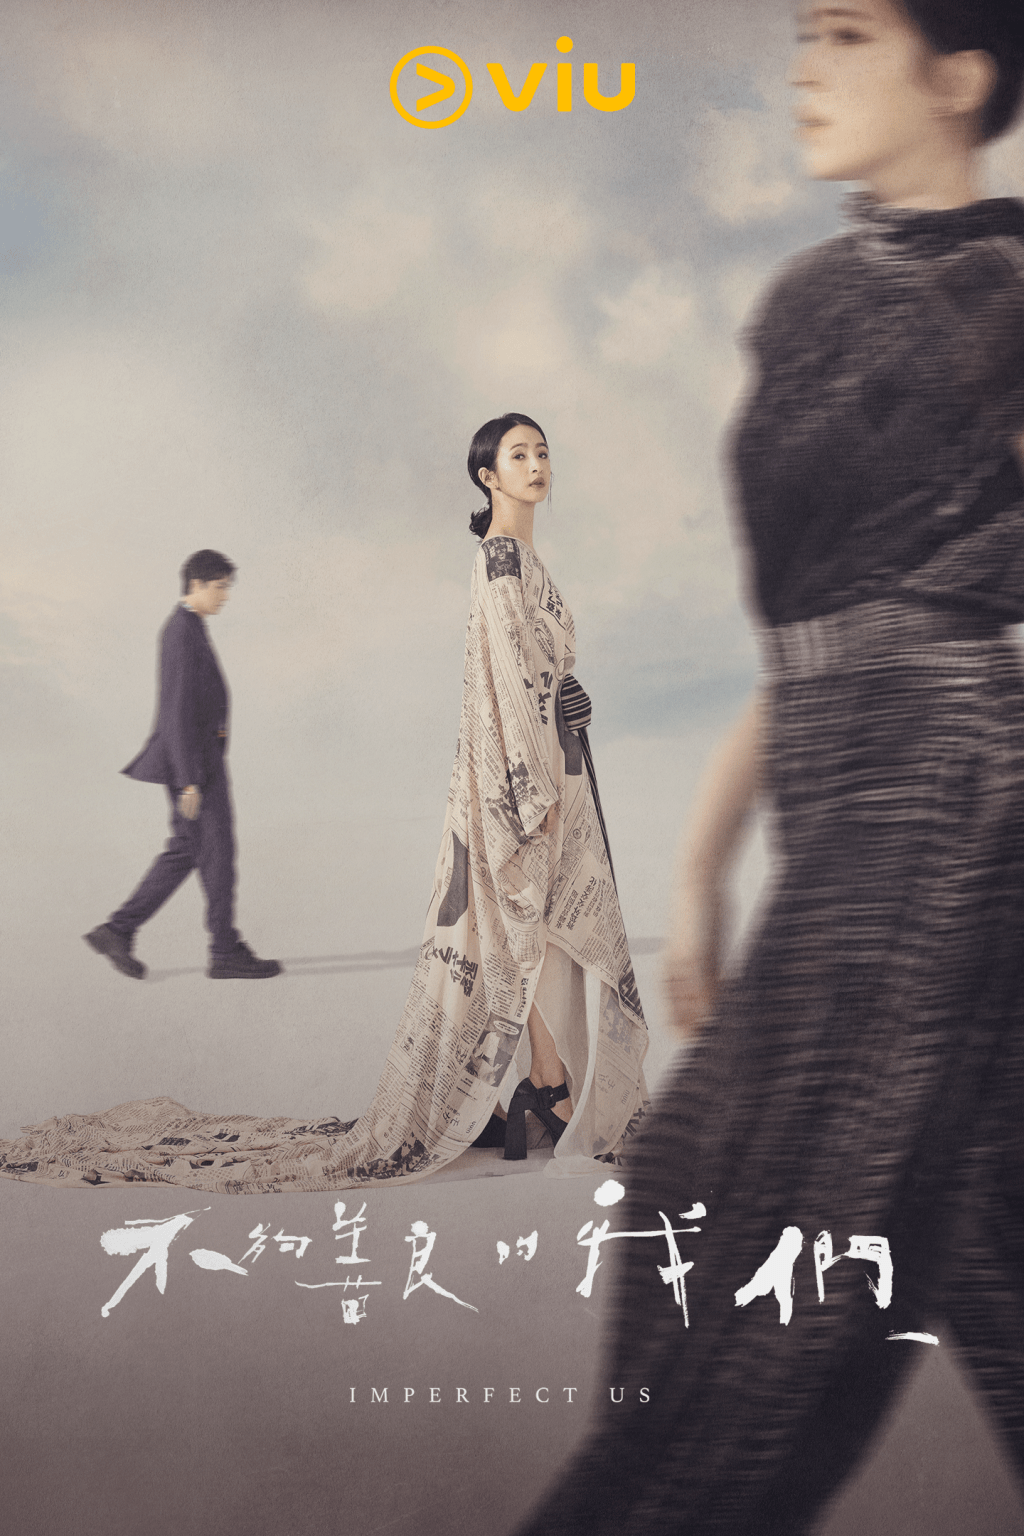 《不够善良的我们》已登陆“黄Viu”，香港观众可免费收看。